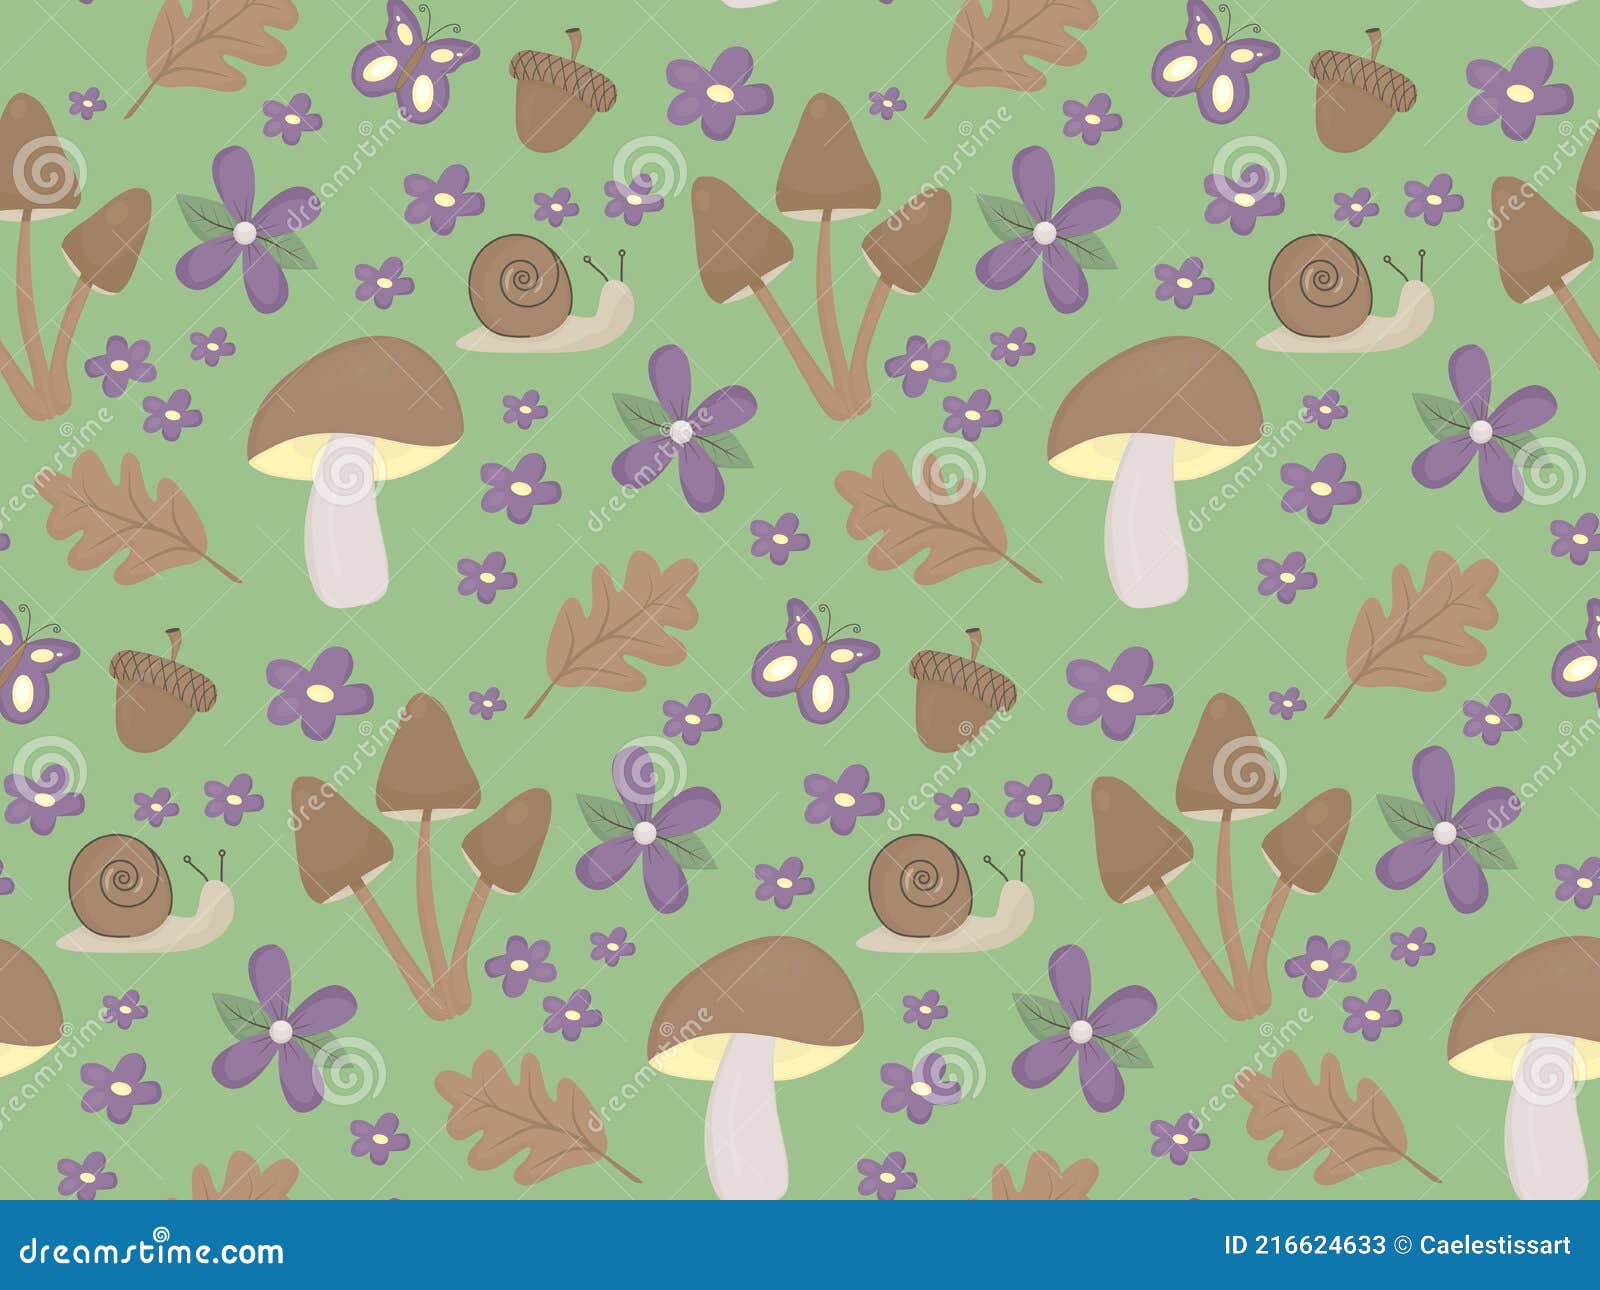 Mushroom Art Images  Free Download on Freepik